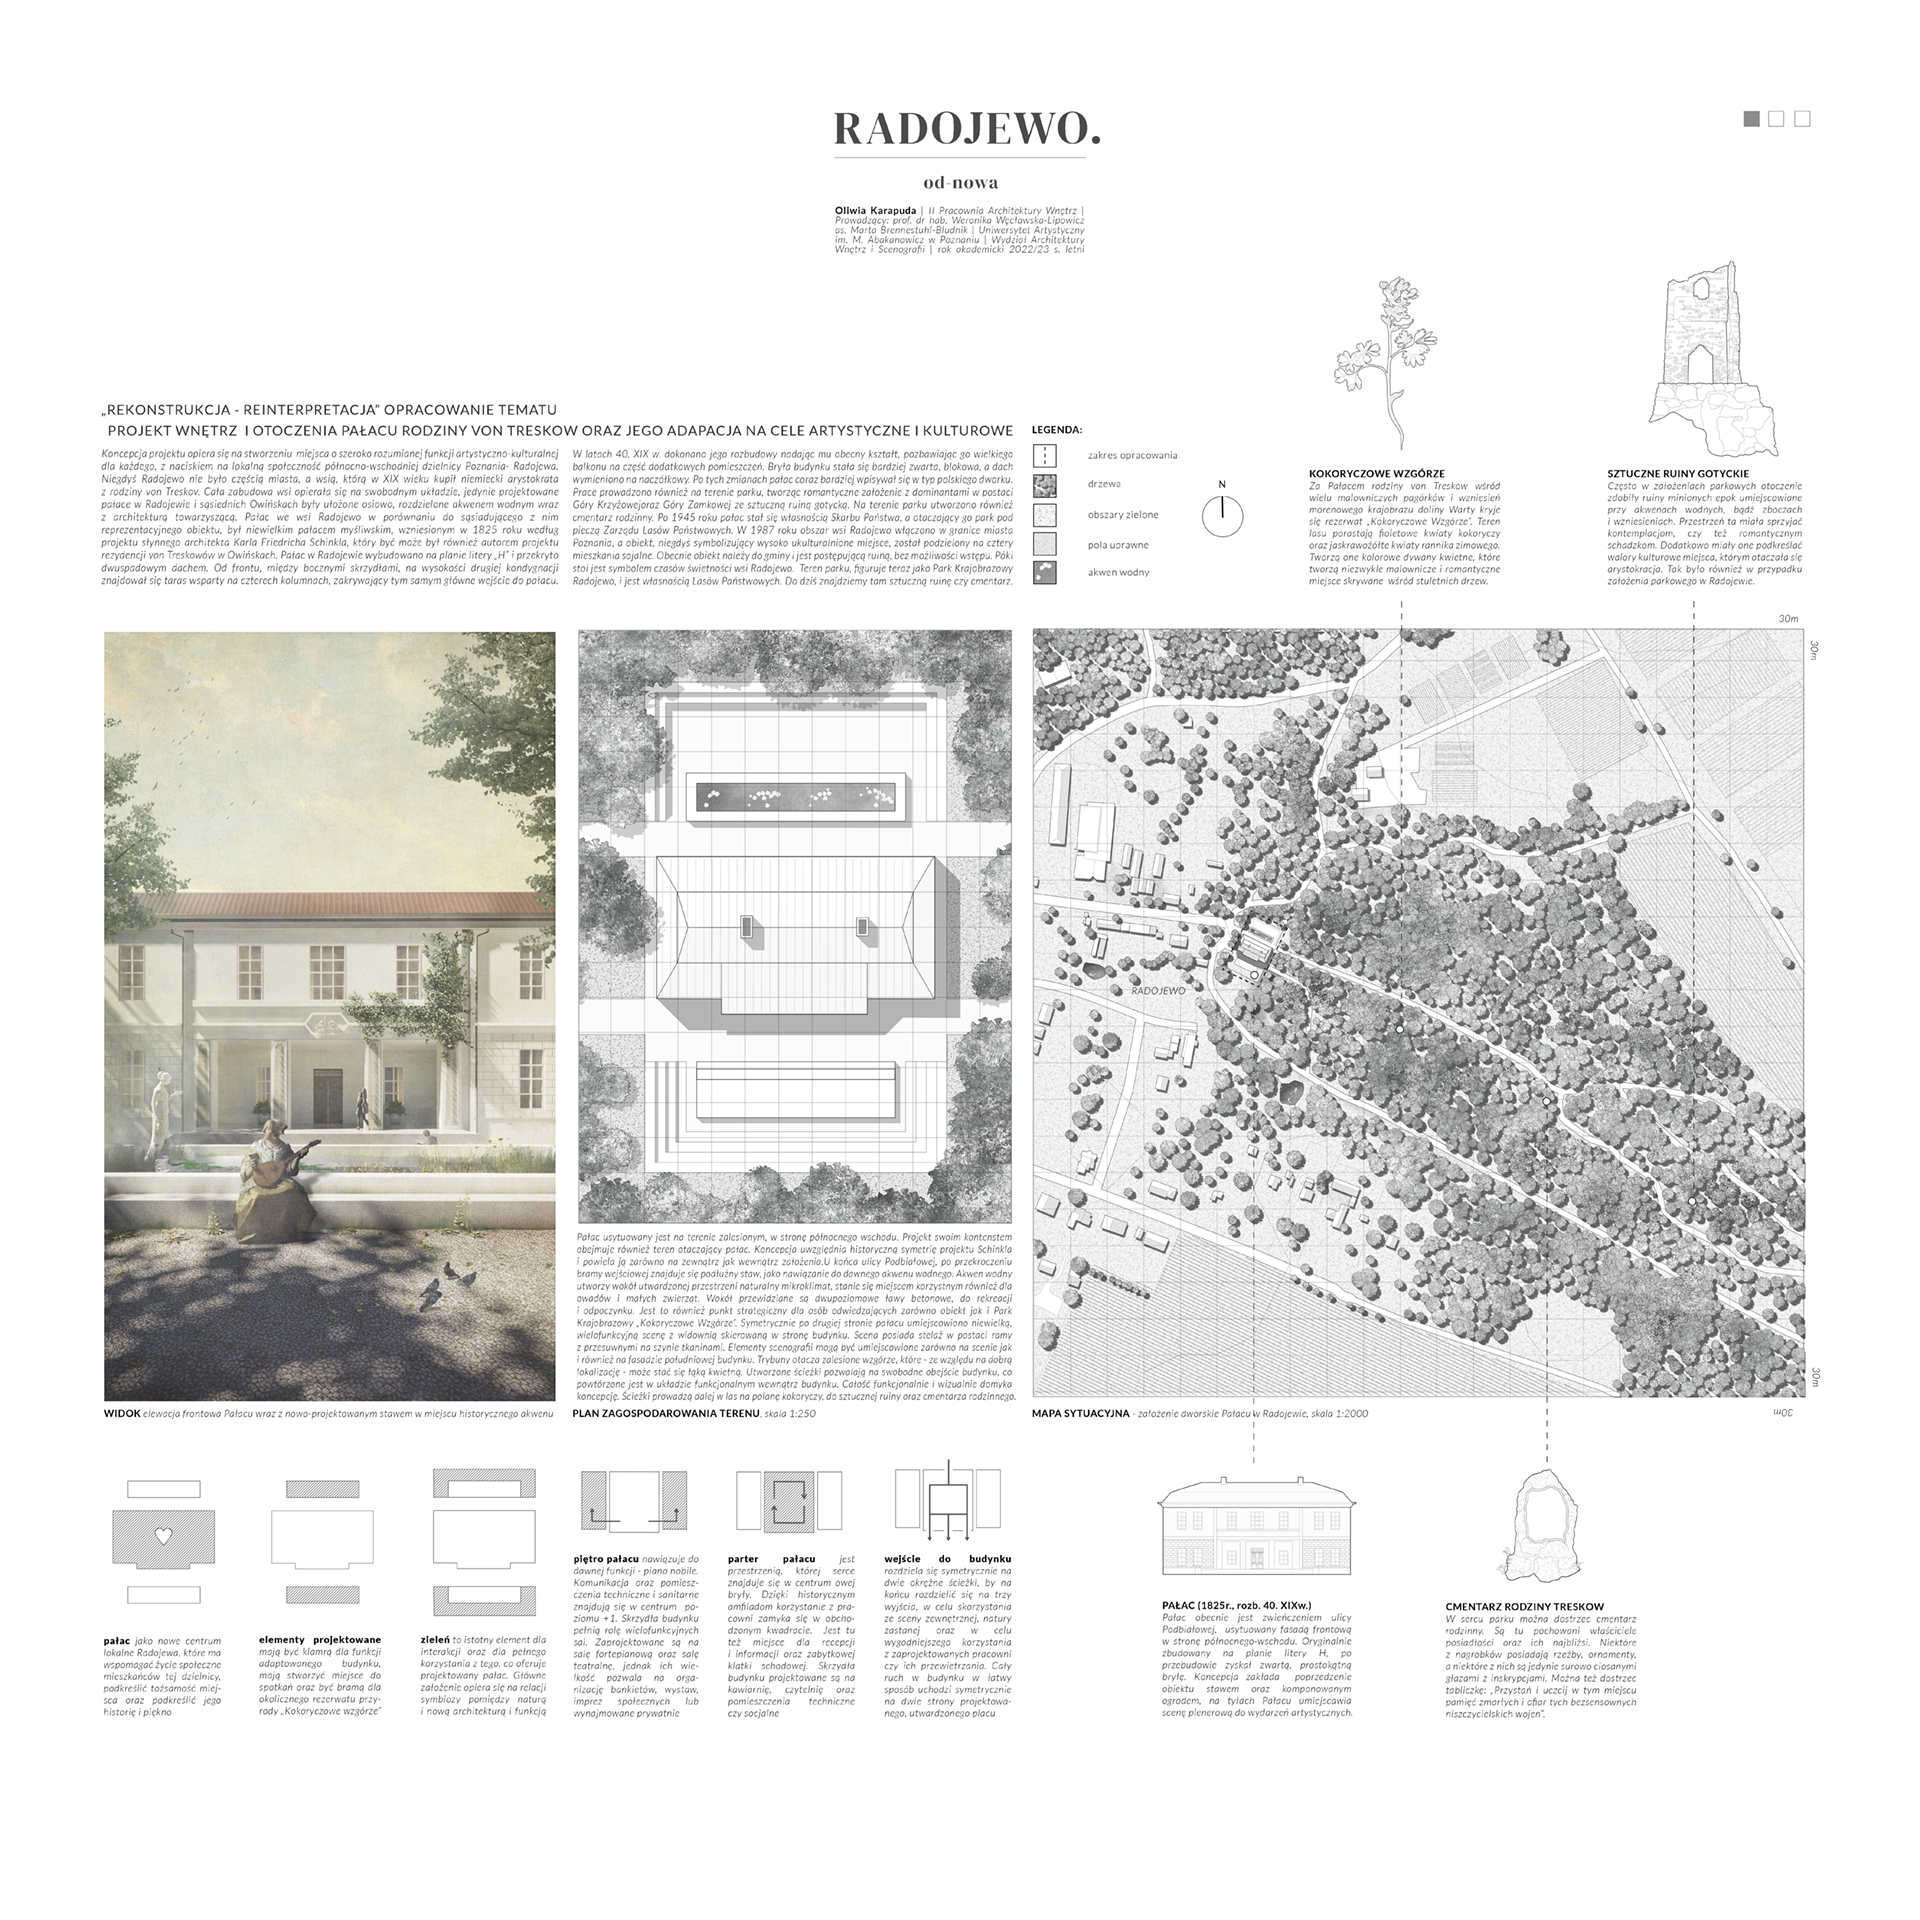 Plansza zawierająca opis ideowy projektu dotyczącego adaptacji pałacu w Radojewie na cele kulturowe. Plansza przedstawia plan zagospodarowania terenu, mapę sytuacyjną oraz wizualizację przedstawiającą elewację frontową pałacu.  